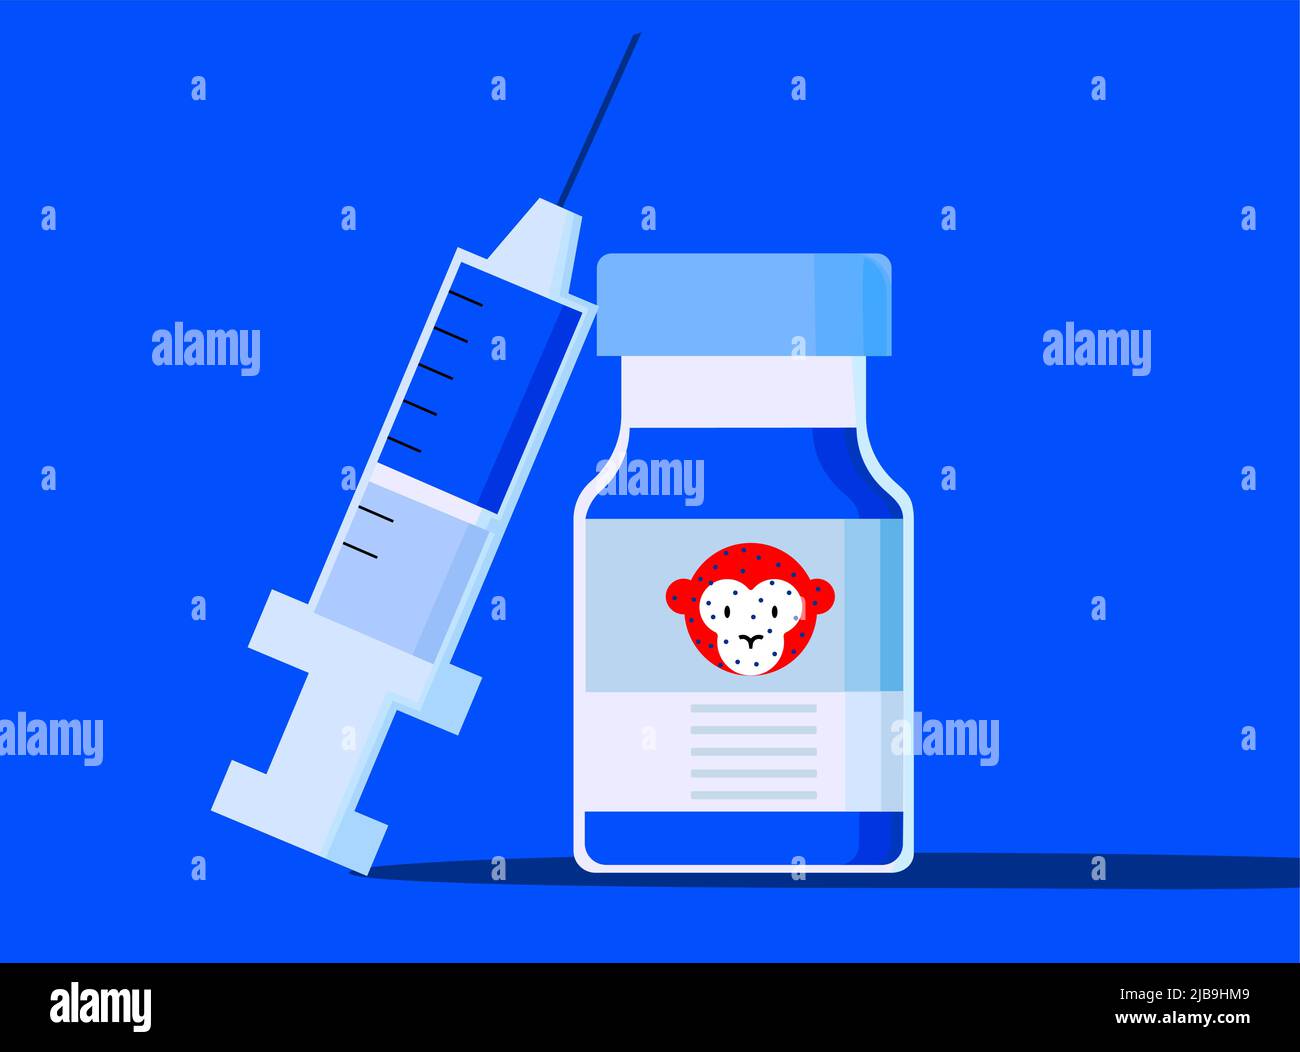 Ilustración de la vacunación contra la viruela del mono y la atención médica para las personas afectadas por la viruela del mono Ilustración del Vector